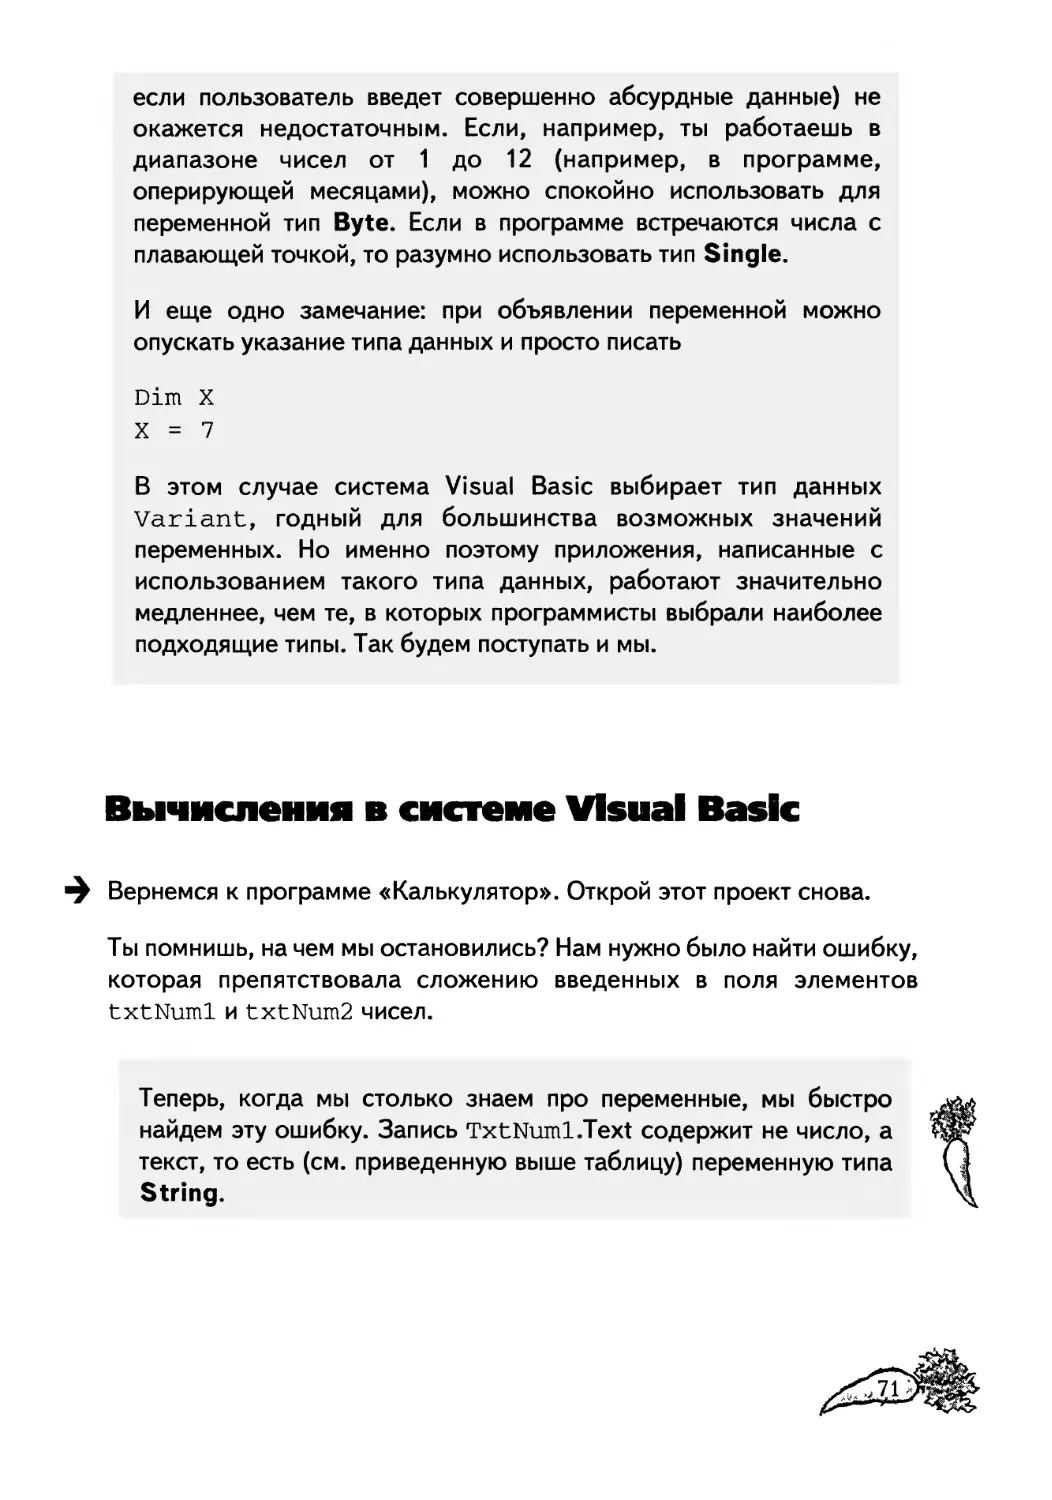 Вычисления в системе Visual Basic